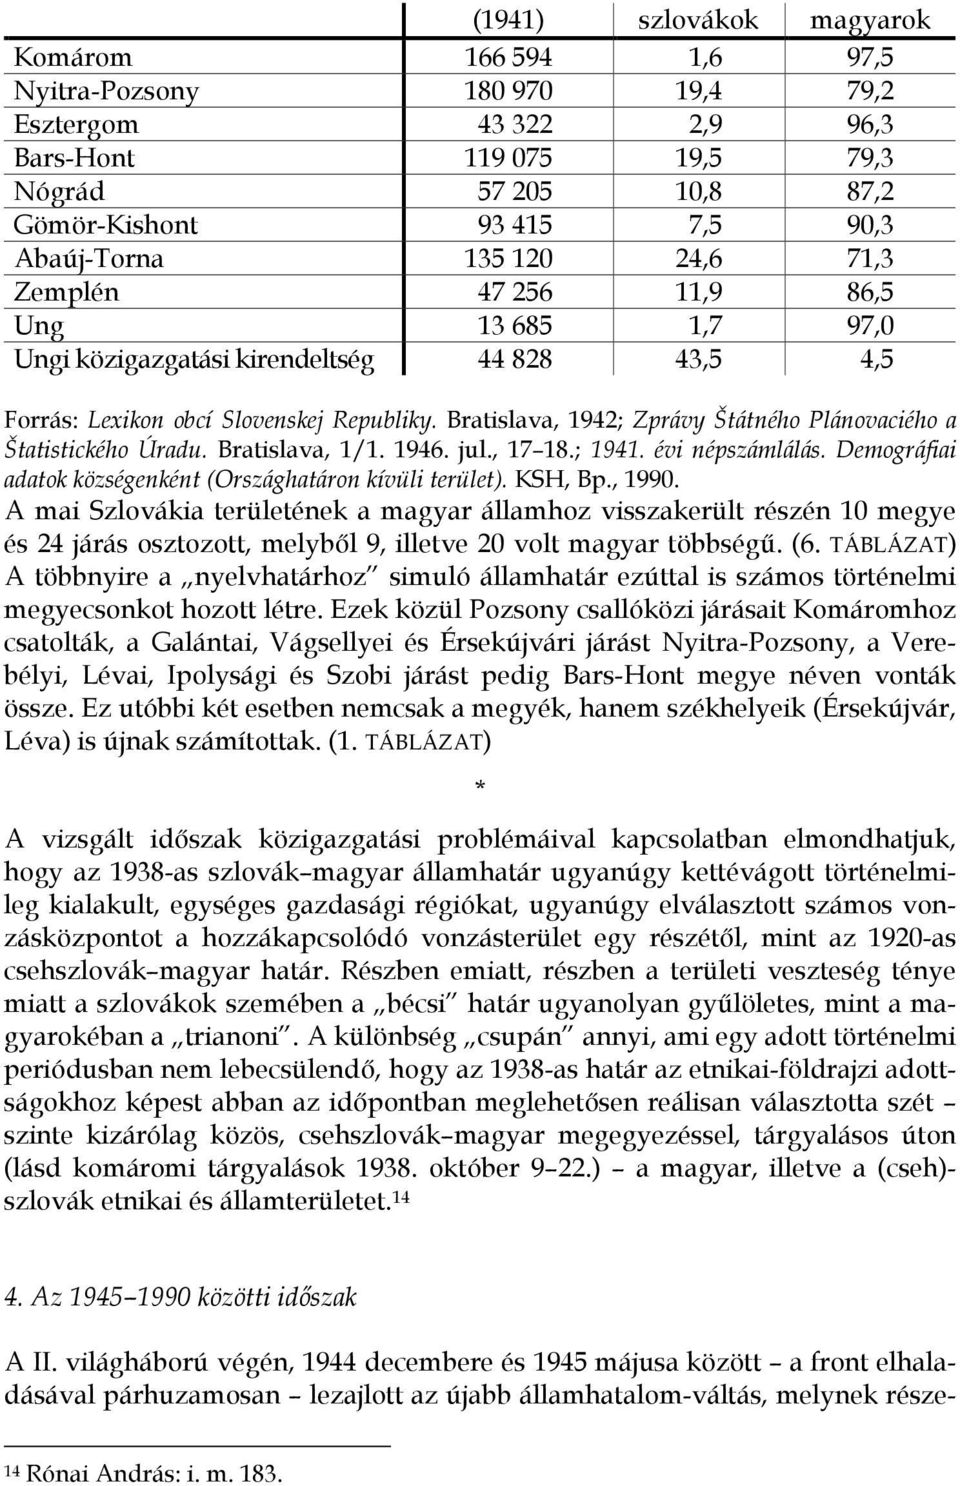 Bratislava, 1942; Zprávy Štátného Plánovaciého a Štatistického Úradu. Bratislava, 1/1. 1946. jul., 17 18.; 1941. évi népszámlálás. Demográfiai adatok községenként (Országhatáron kívüli terület).